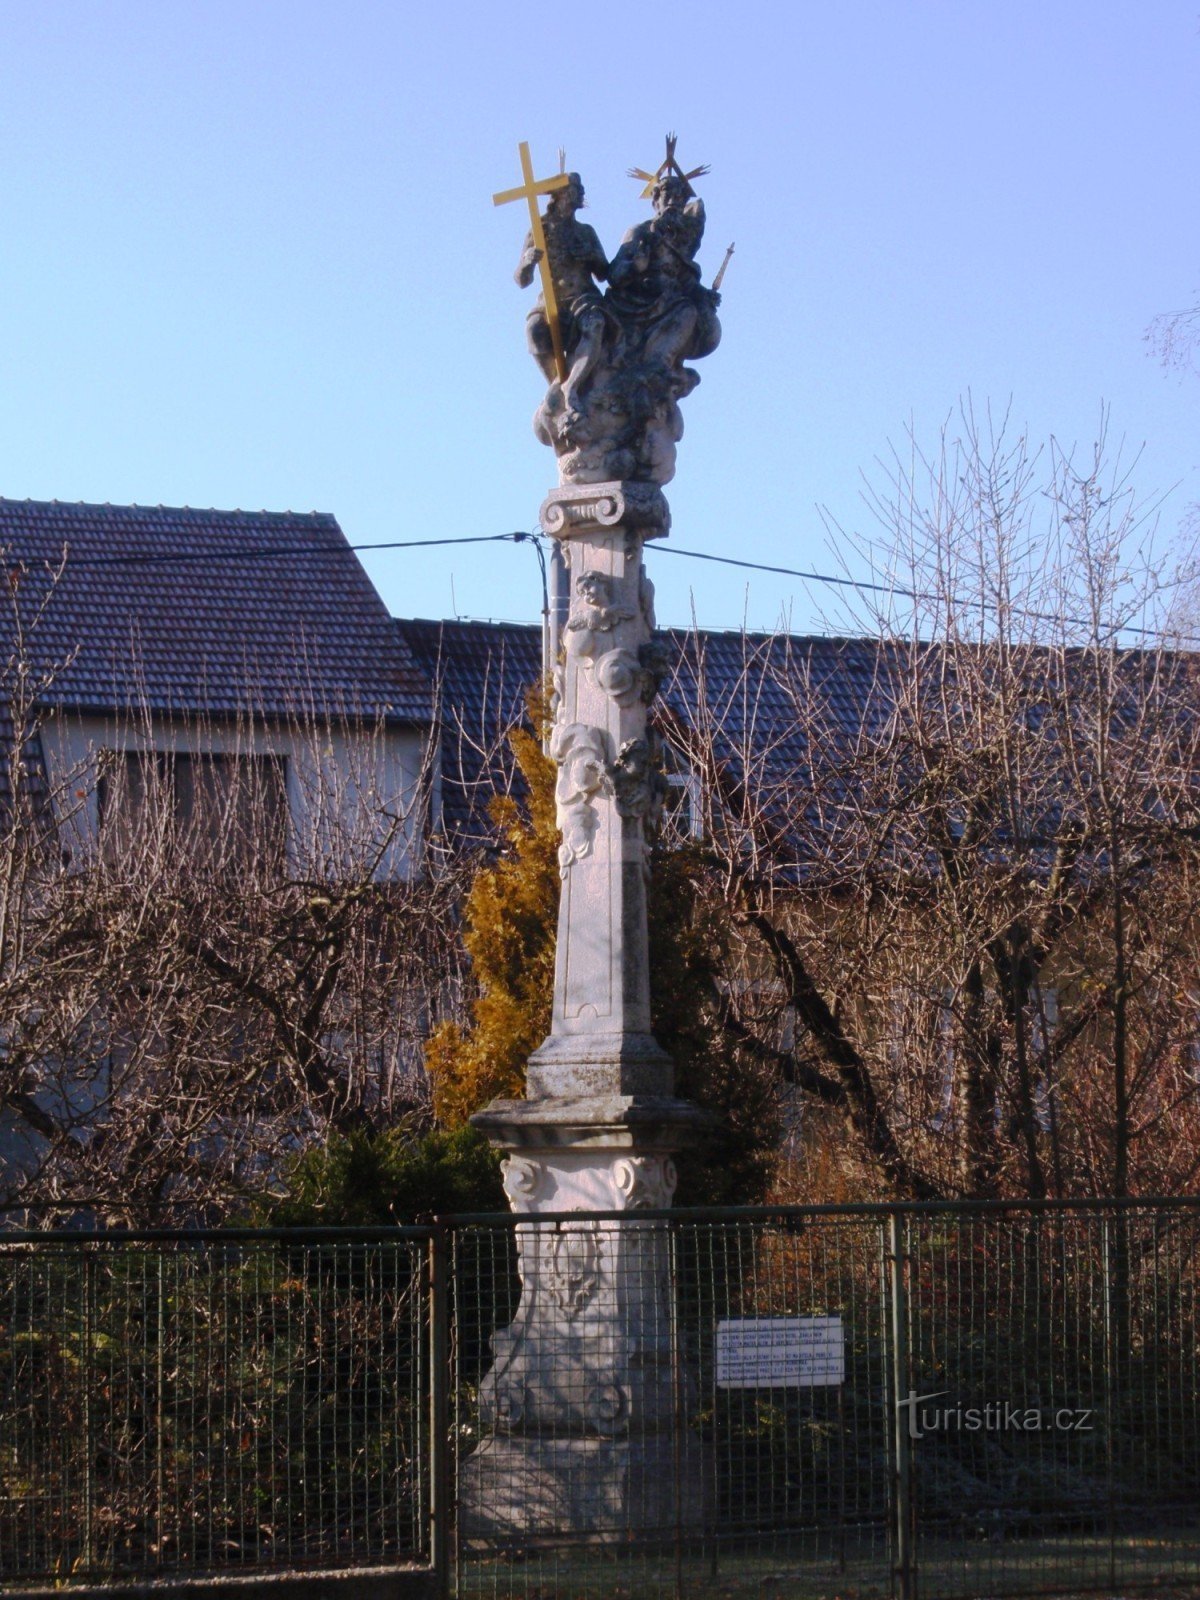 Kip Presvetog Trojstva u Troubsku